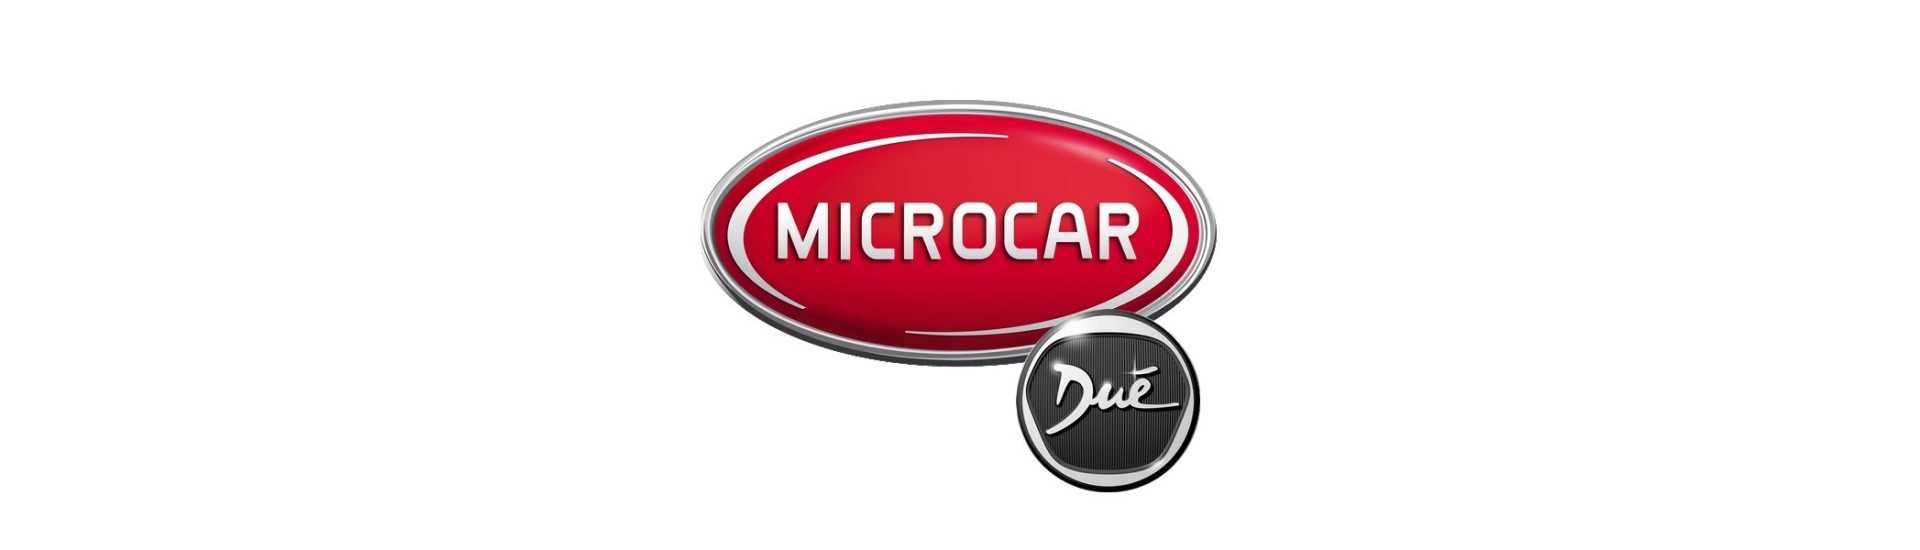 Commodo ao melhor preço para carros sem licença Microcar Dué